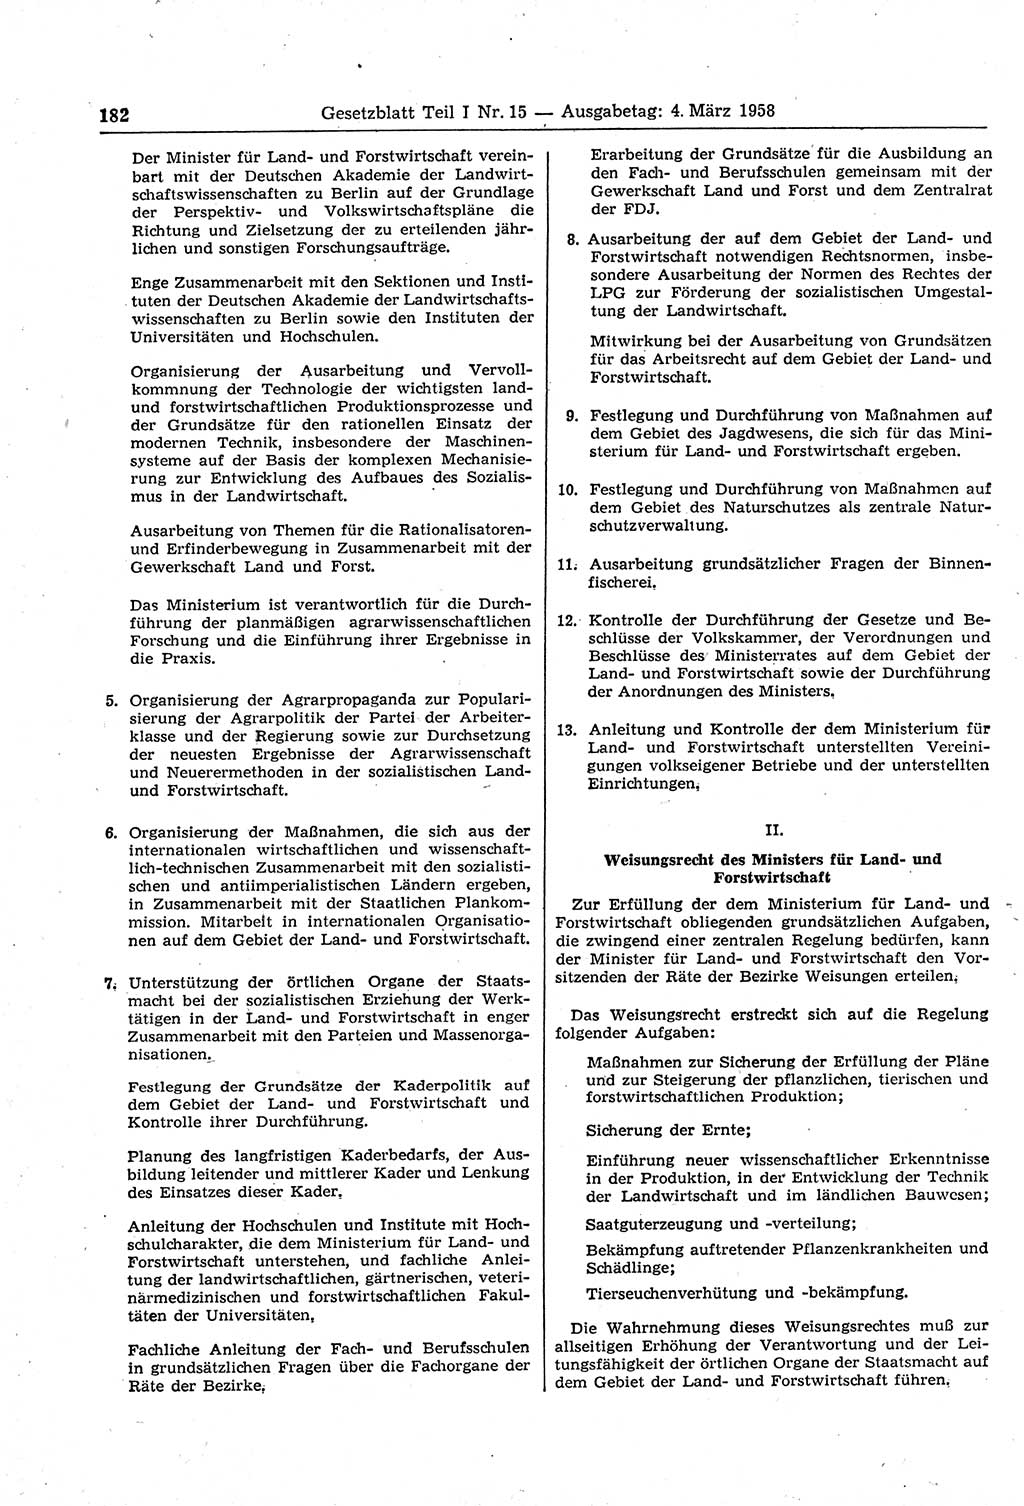 Gesetzblatt (GBl.) der Deutschen Demokratischen Republik (DDR) Teil Ⅰ 1958, Seite 182 (GBl. DDR Ⅰ 1958, S. 182)